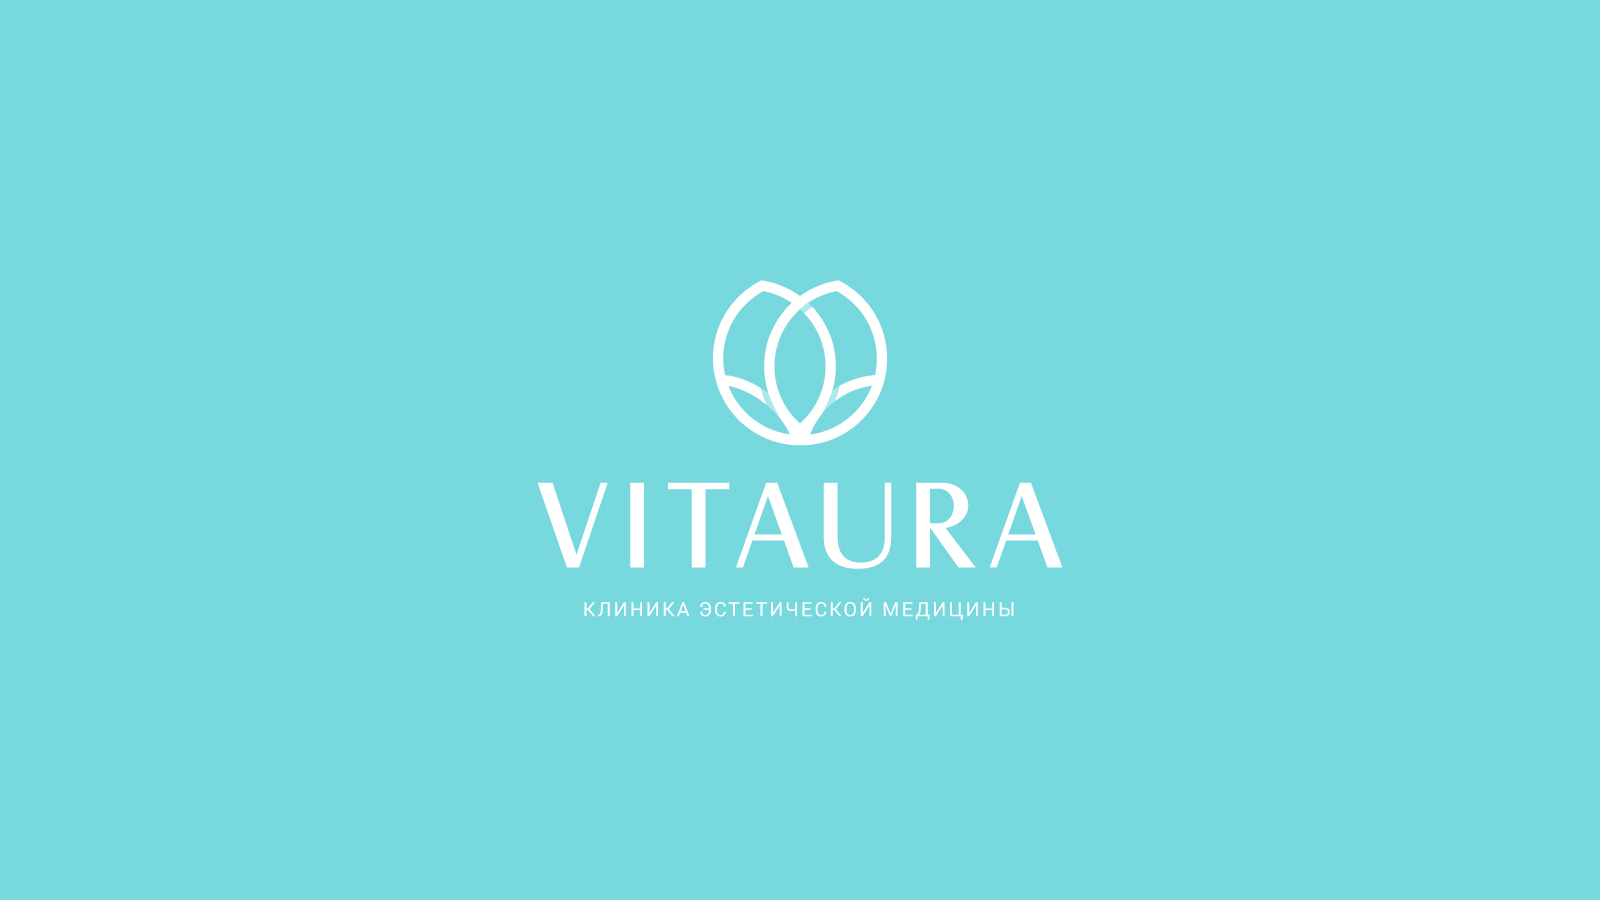 Разработка нейминга клиники Vitaura